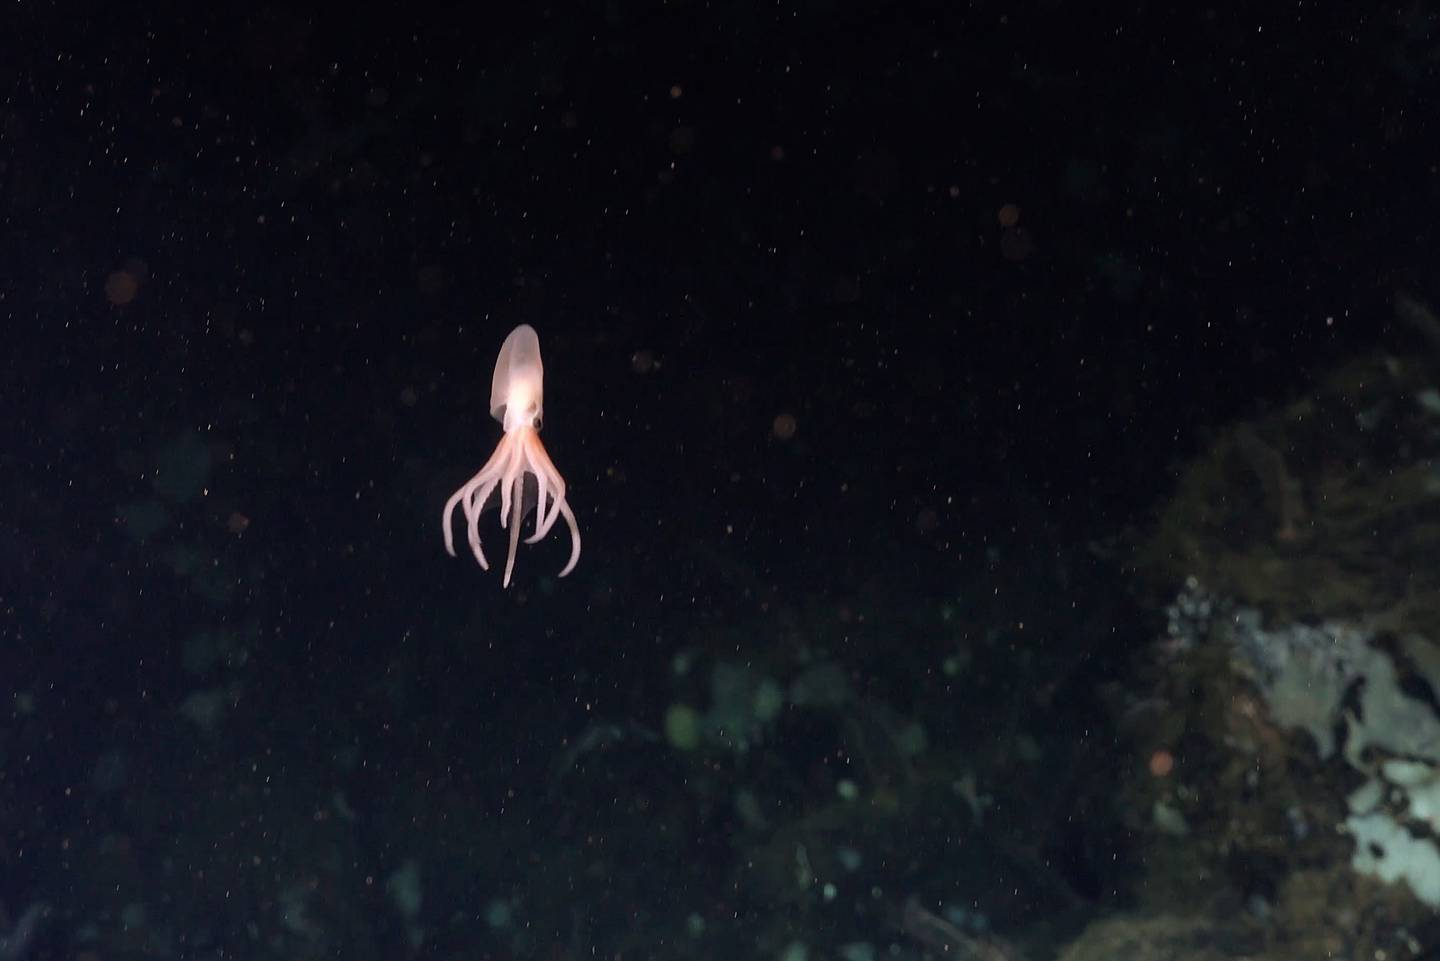 Esta es la especie Dorado, una de las cuatro nuevas descubiertas.

Fotografía: Schmidt Ocean Institute